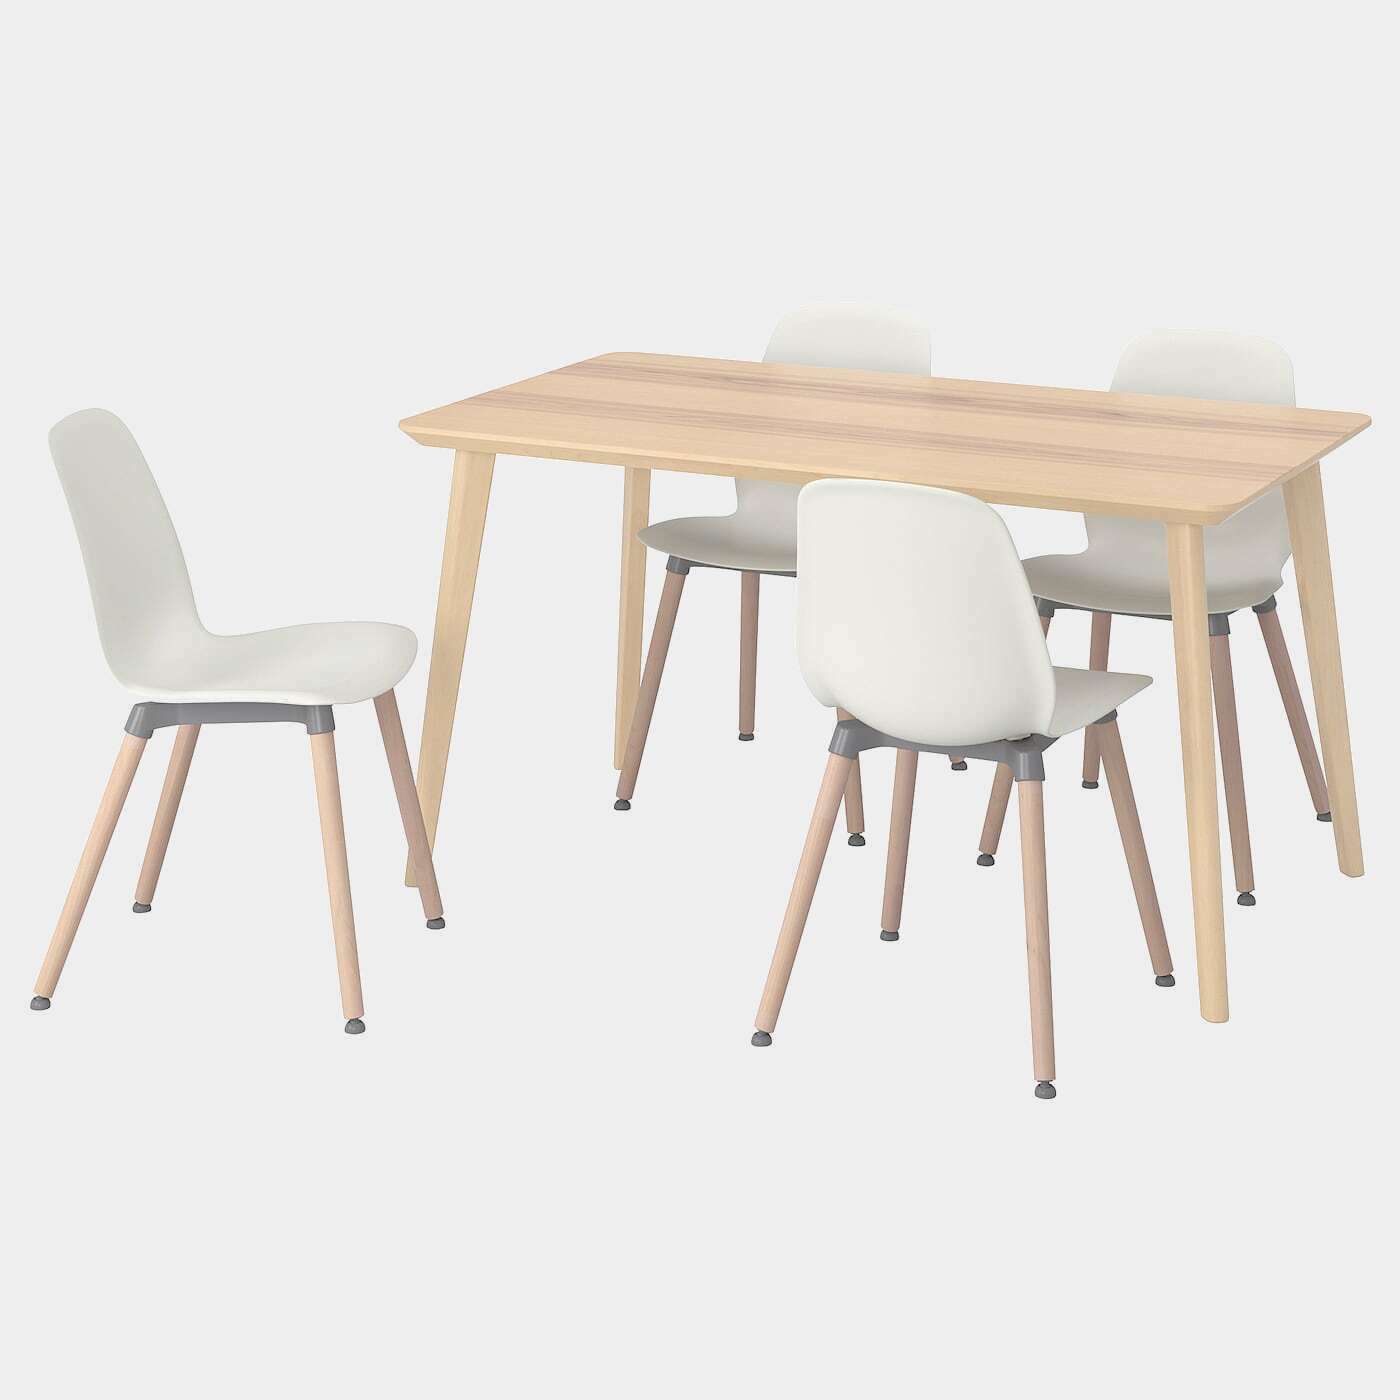 LISABO / LEIFARNE Tisch und 4 Stühle  - Essplatzgruppe - Möbel Ideen für dein Zuhause von Home Trends. Möbel Trends von Social Media Influencer für dein Skandi Zuhause.